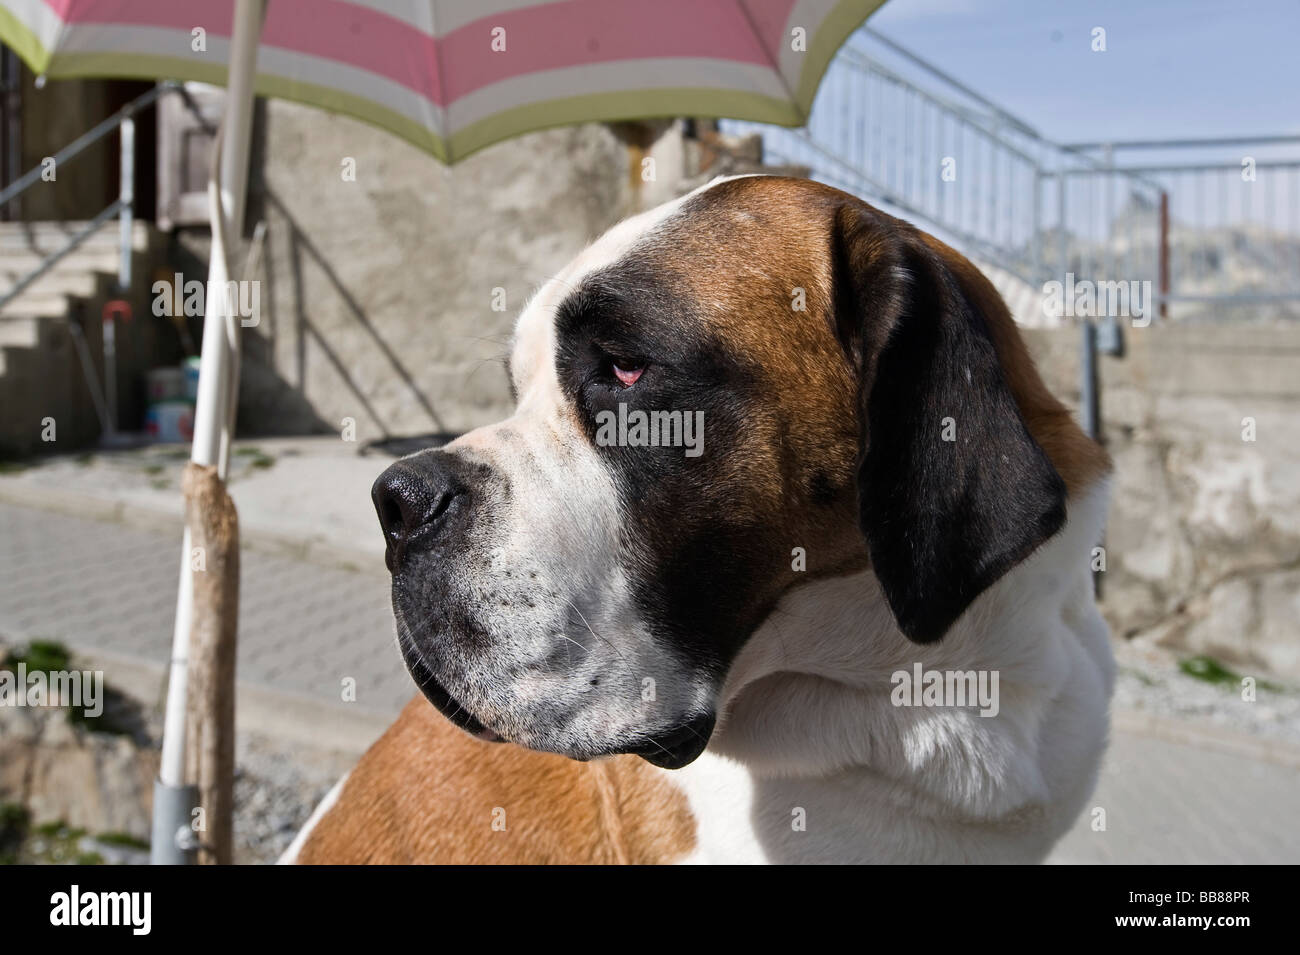 St. Bernard dog, portrait, Great St Bernard Pass, Valais, Switzerland, Stock Photo